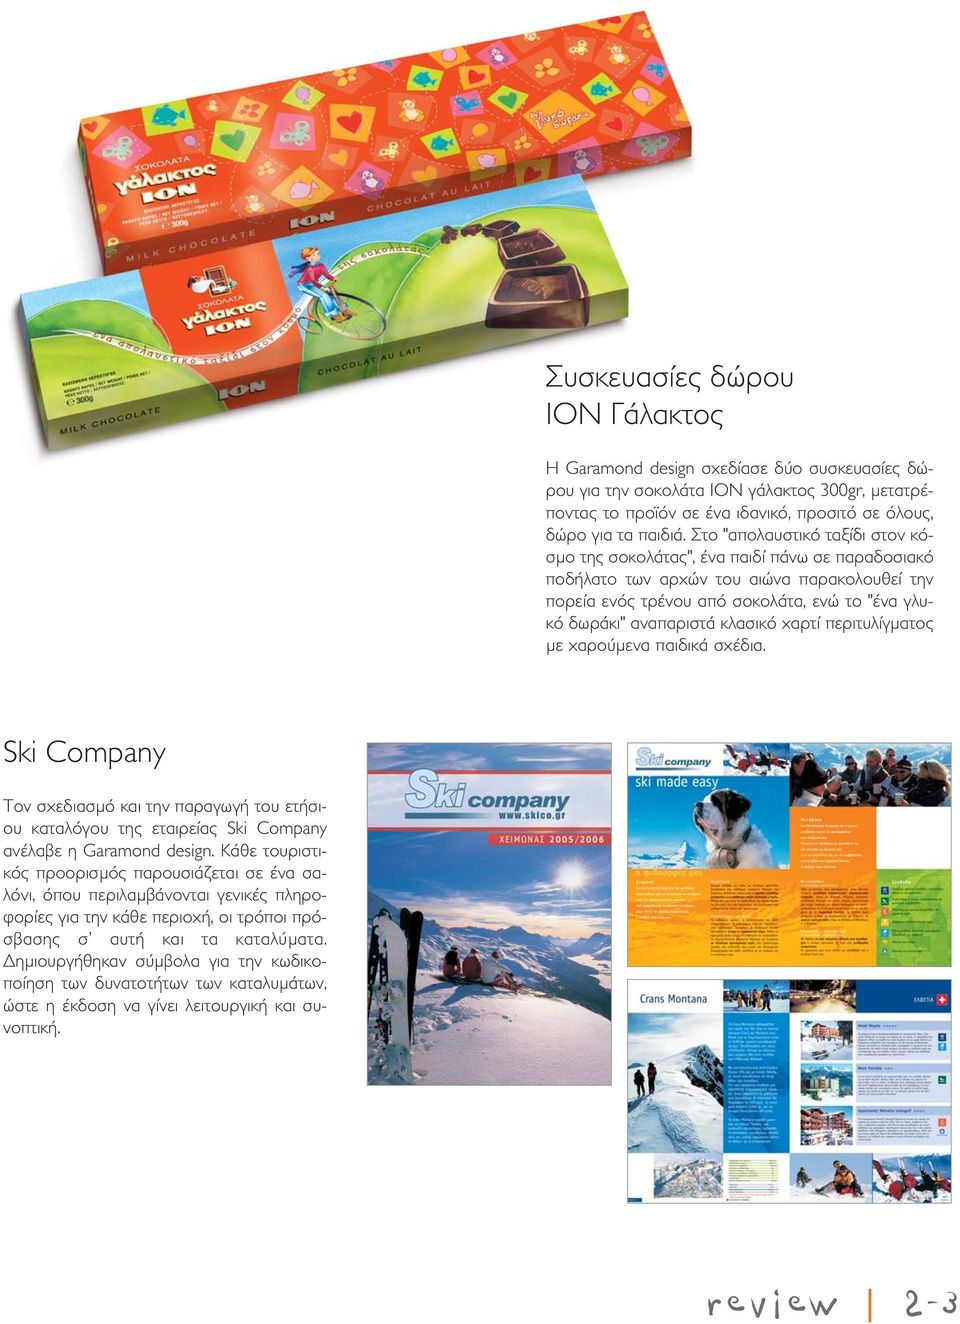 κλασικό χαρτί περιτυλίγματος με χαρούμενα παιδικά σχέδια. Ski Company Τον σχεδιασμό και την παραγωγή του ετήσιου καταλόγου της εταιρείας Ski Company ανέλαβε η Garamond design.